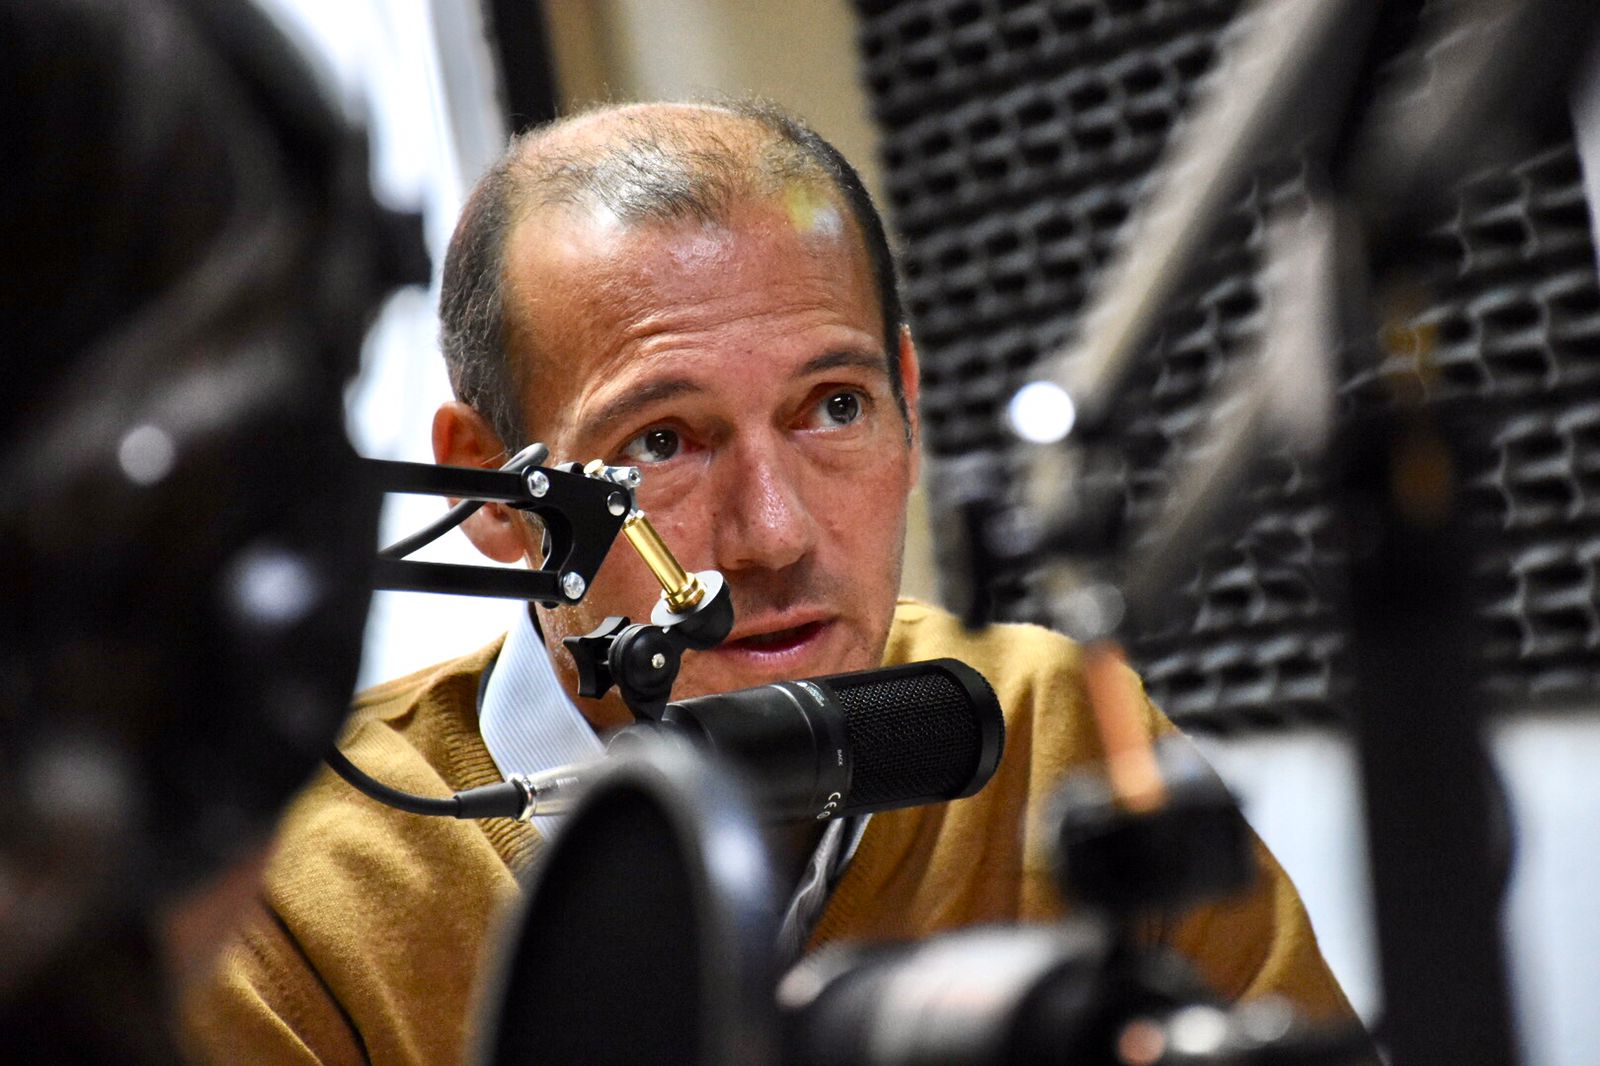 El gobernador de Neuquén brindó una entrevista a la radio de Río Negro. Foto: Matías Subat.